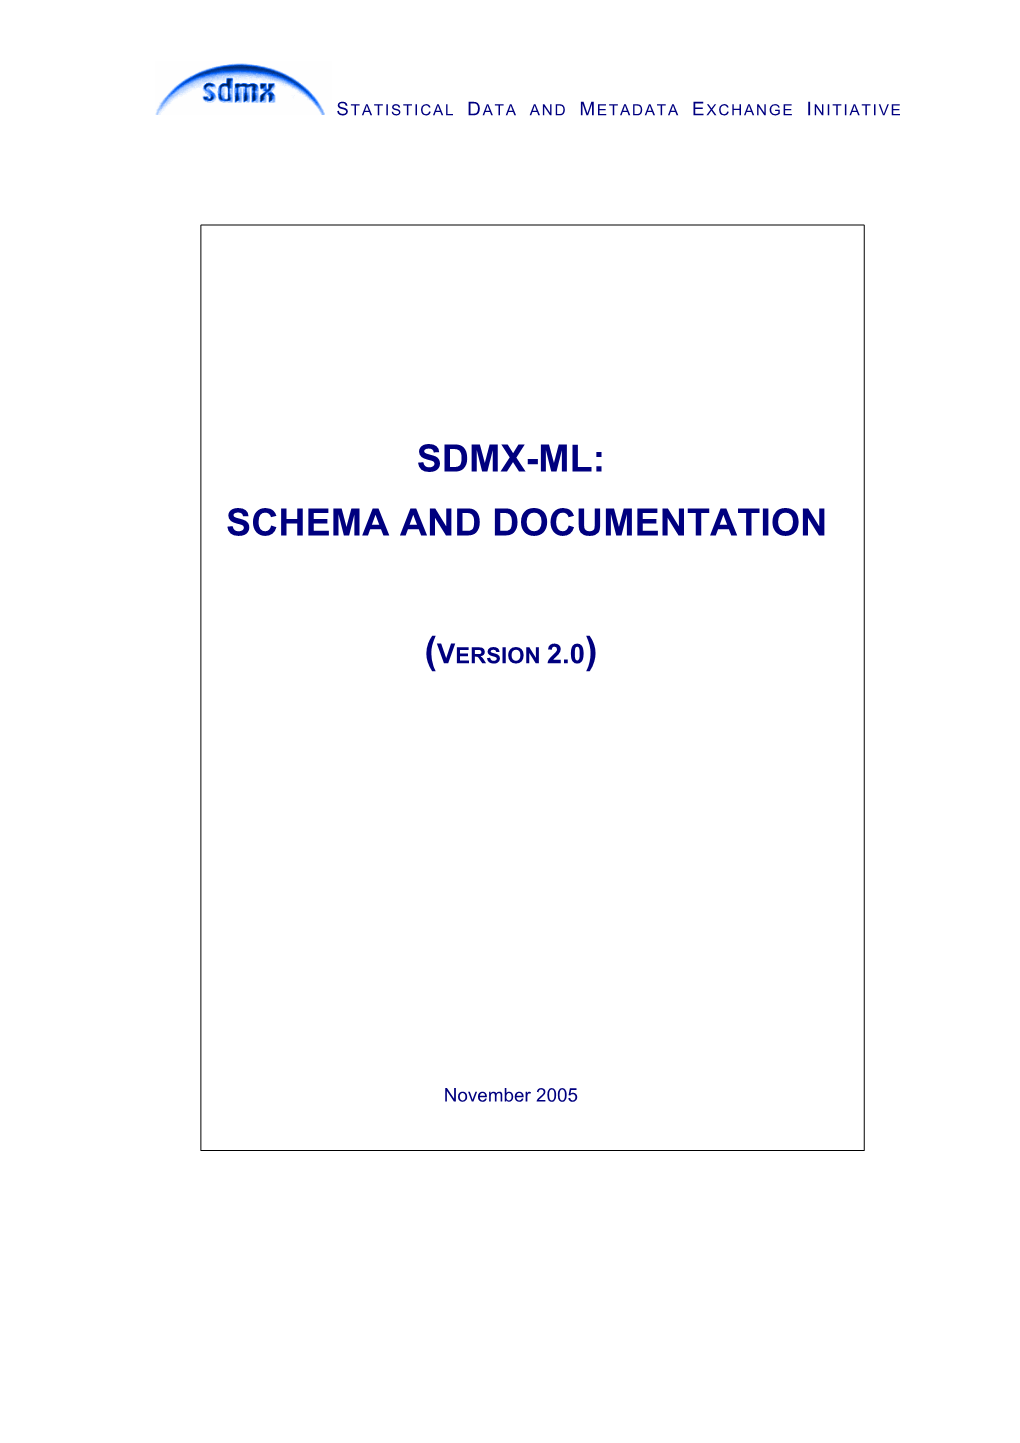 Sdmx-Ml: Schema and Documentation (Version 2.0)